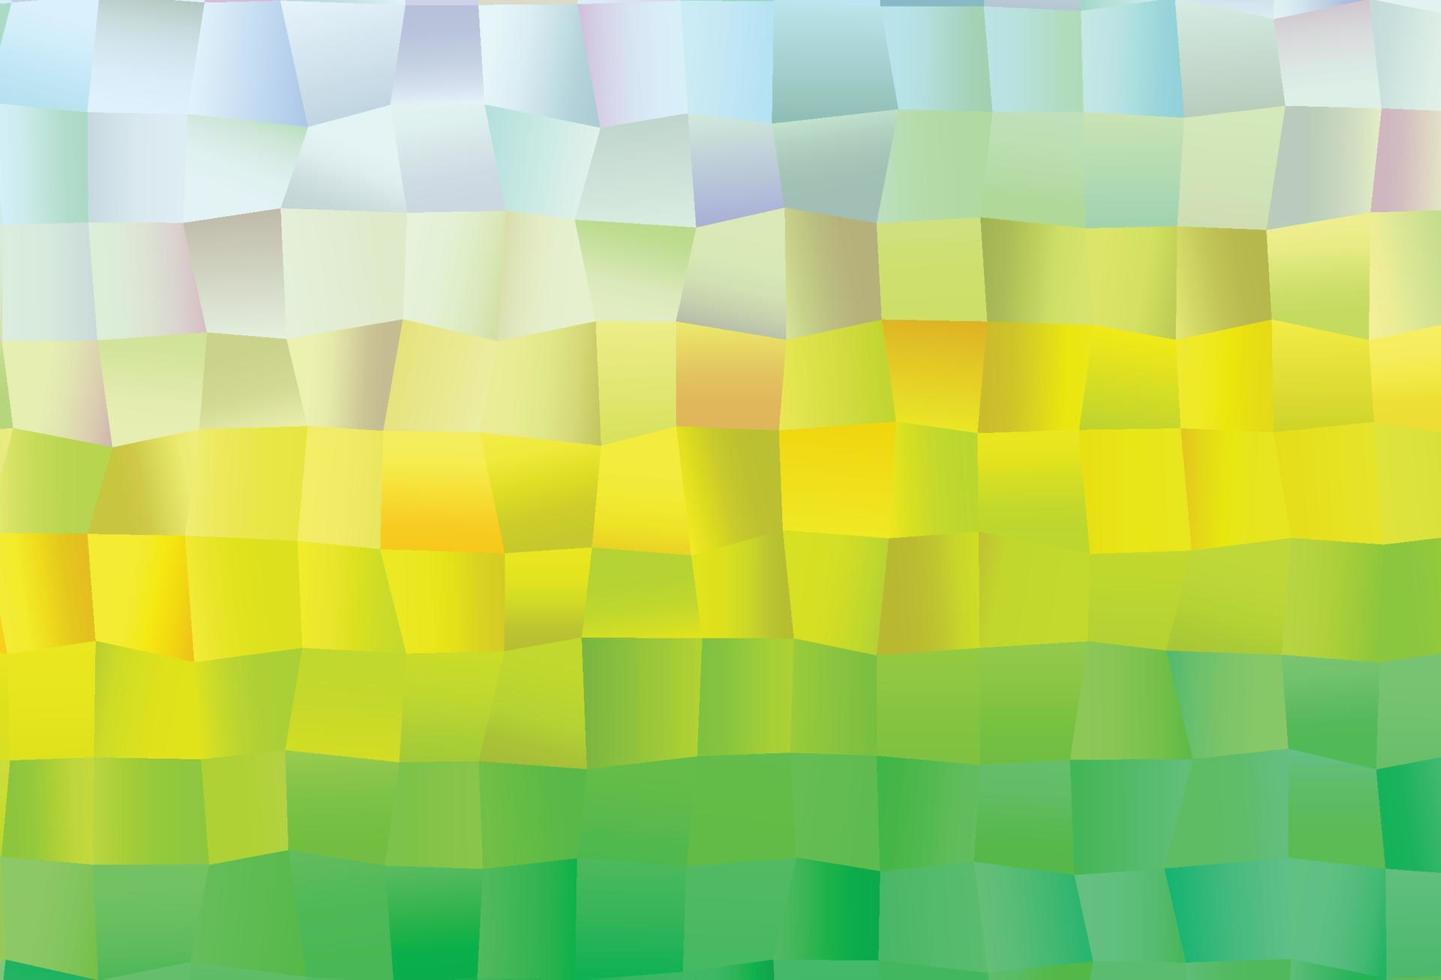 ljusgrönt, gult vektormönster med kristaller, rektanglar. vektor